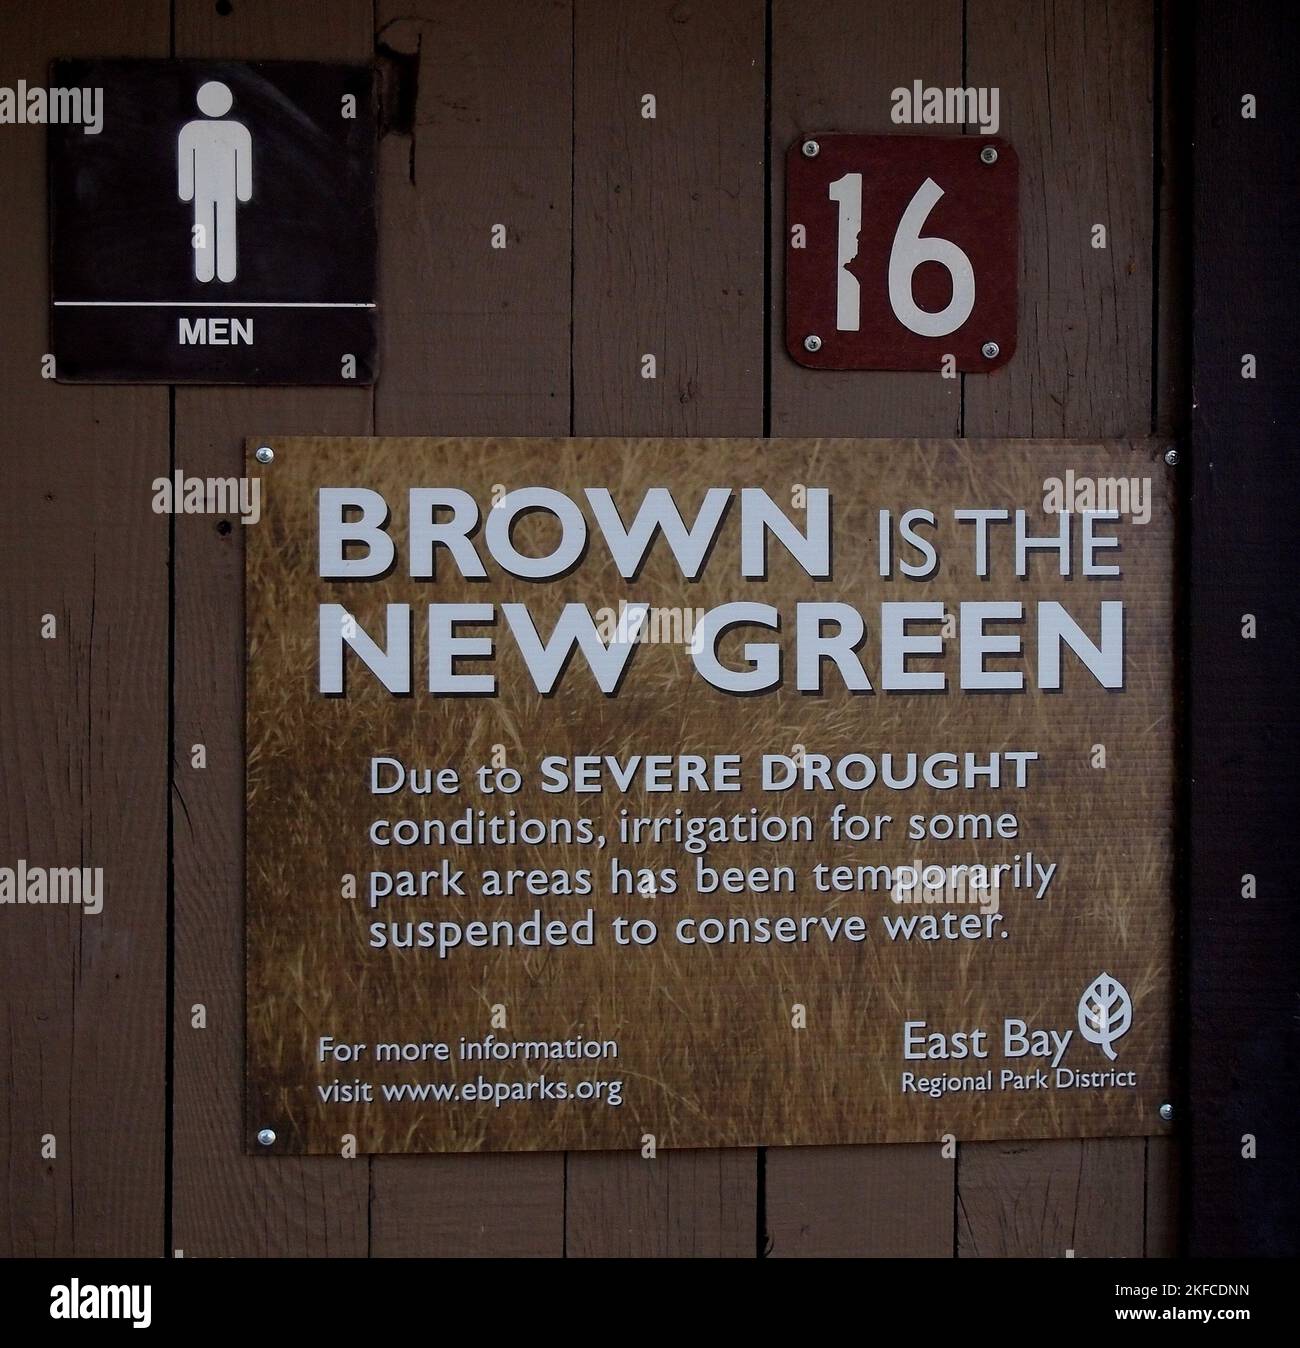 El marrón es el nuevo verde debido a las condiciones severas del tiro en un parque regional de la bahía del este, California Foto de stock